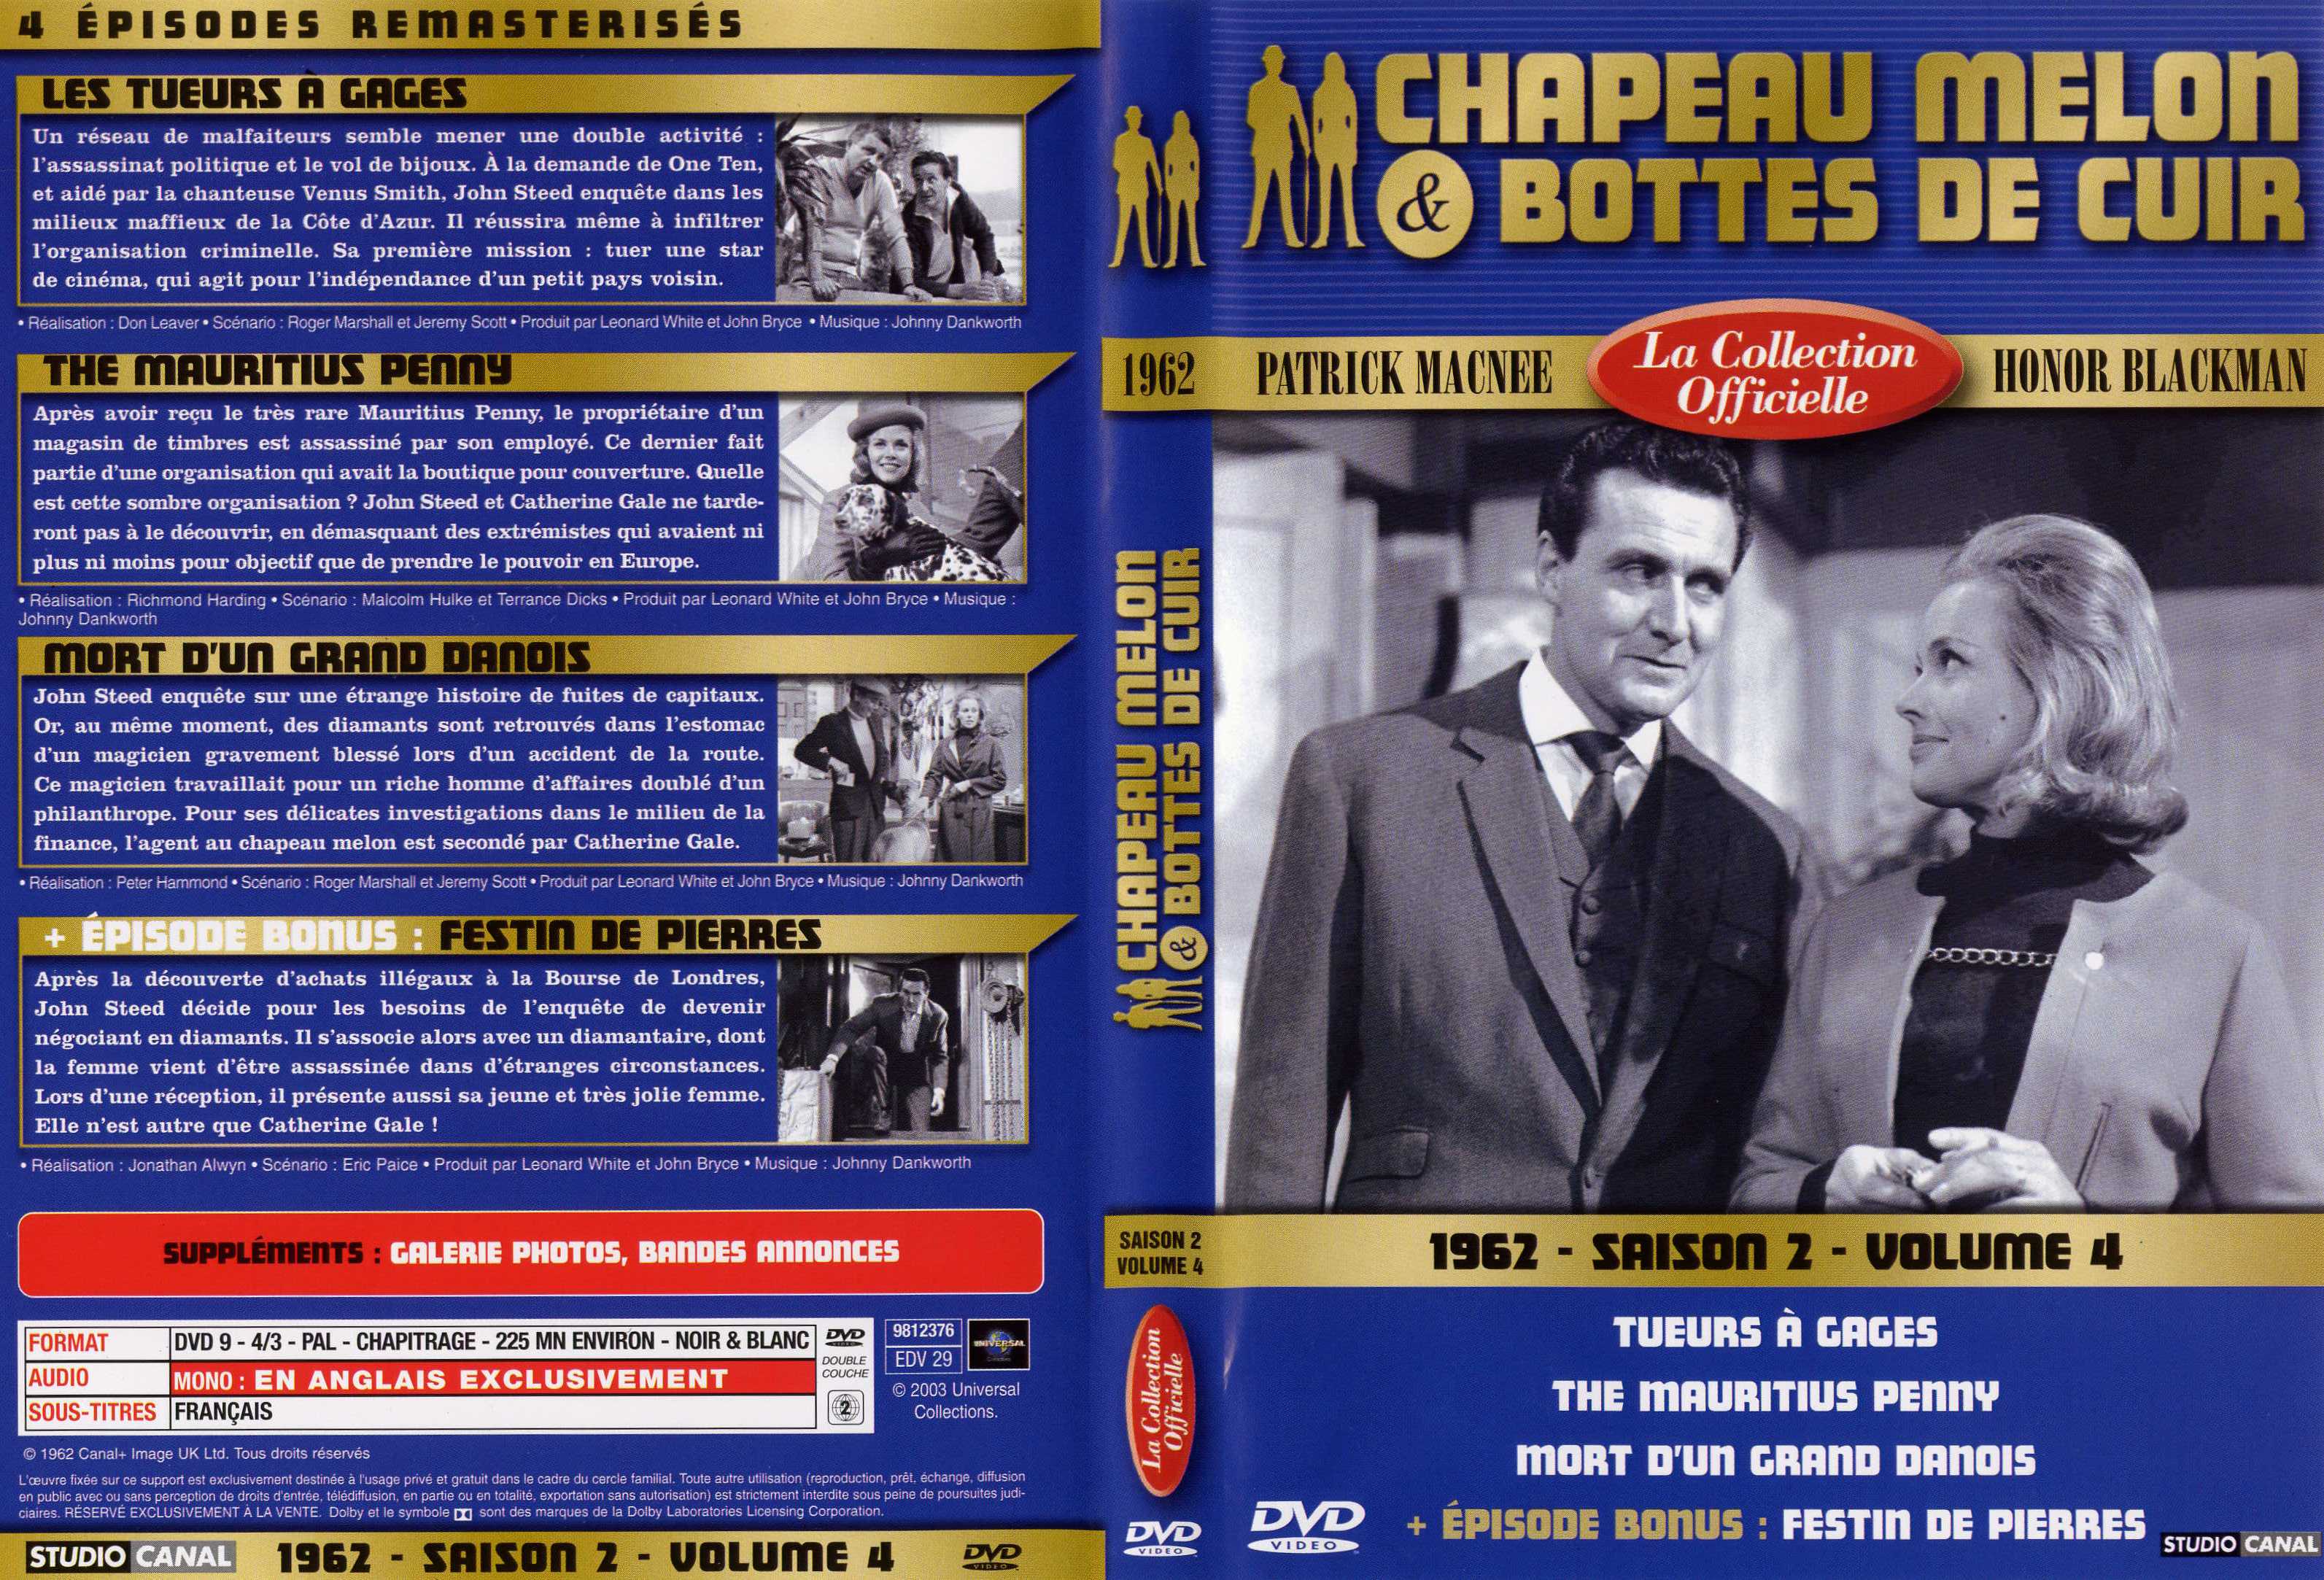 Jaquette DVD Chapeau melon et bottes de cuir 1962 saison 2 vol 4